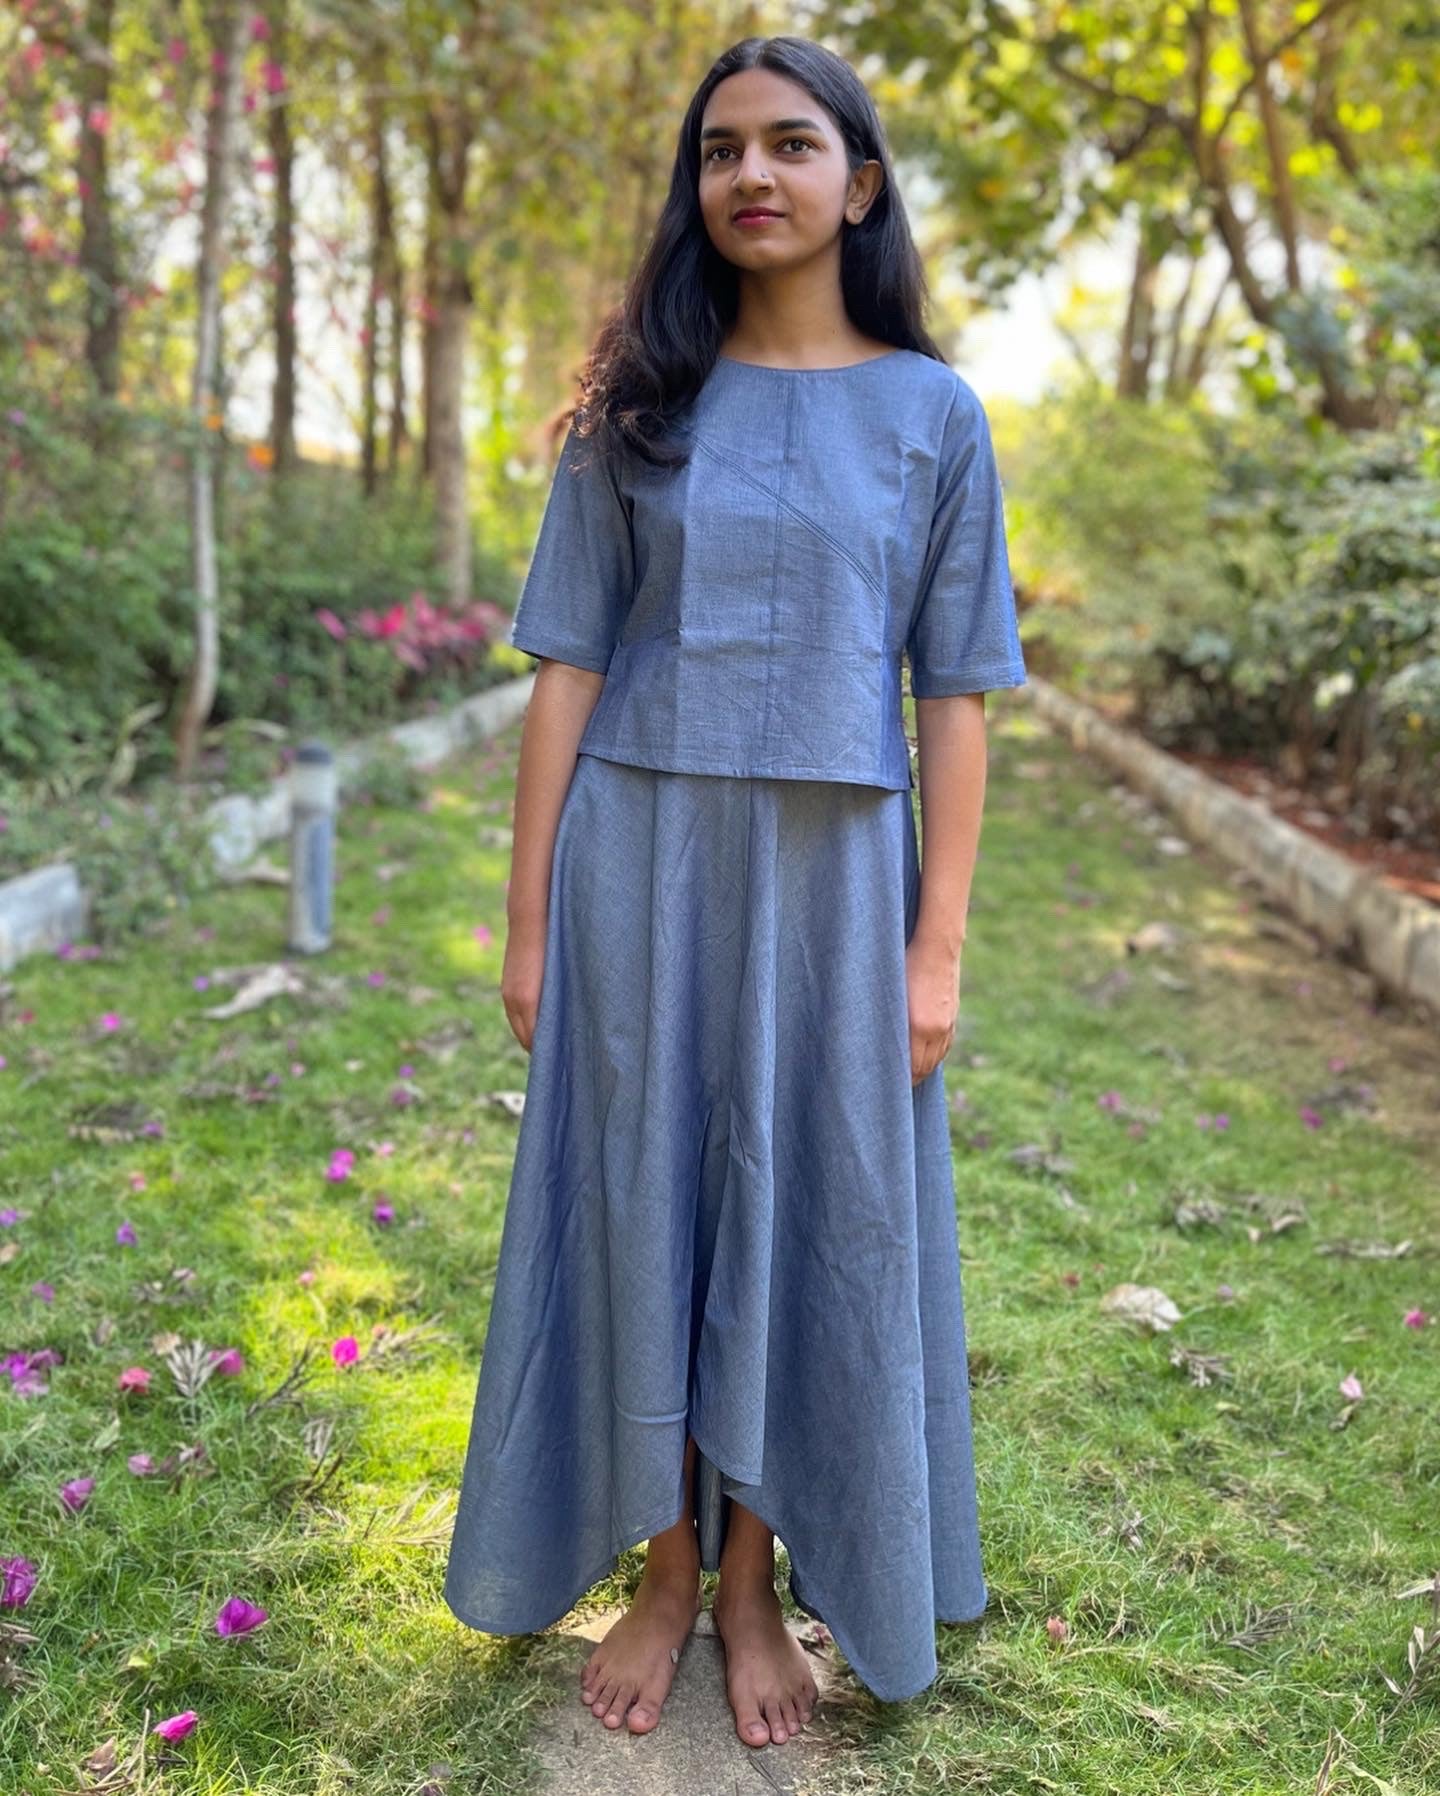 Adhira Skirt - Greyish Blue